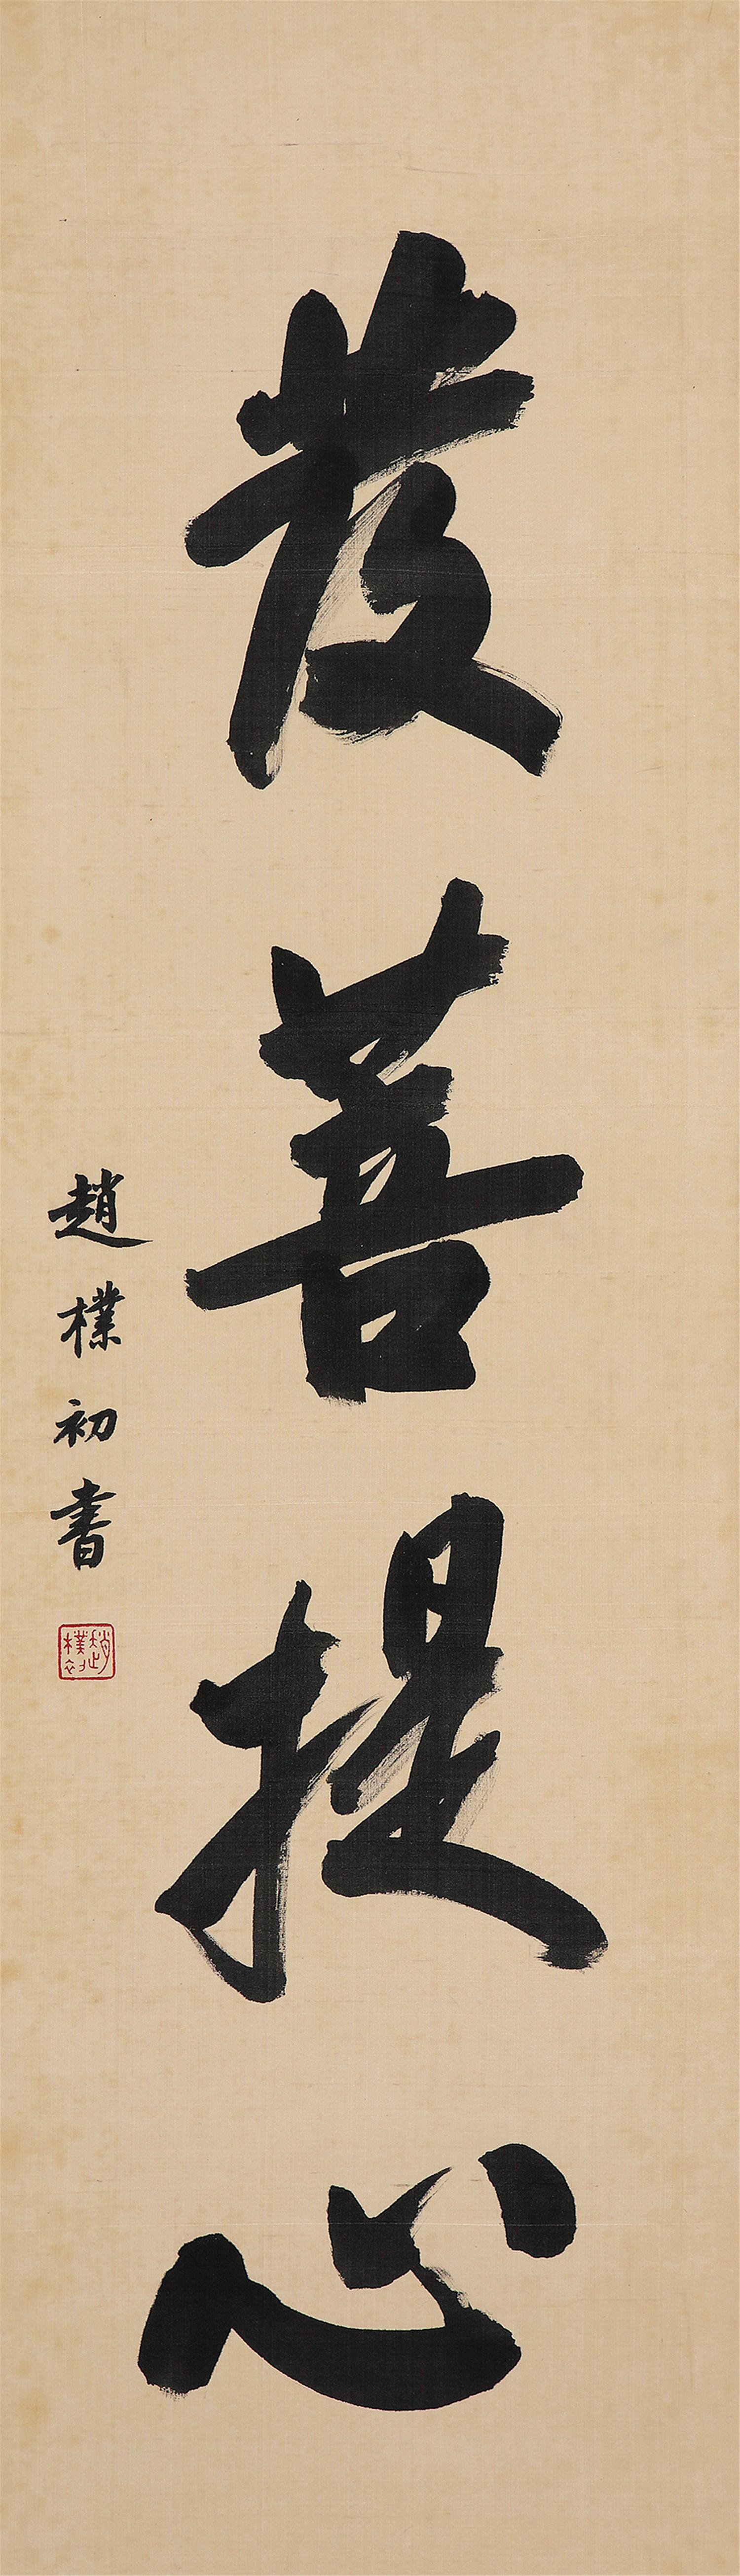 赵朴初(1907-2000)行书"发菩提心"